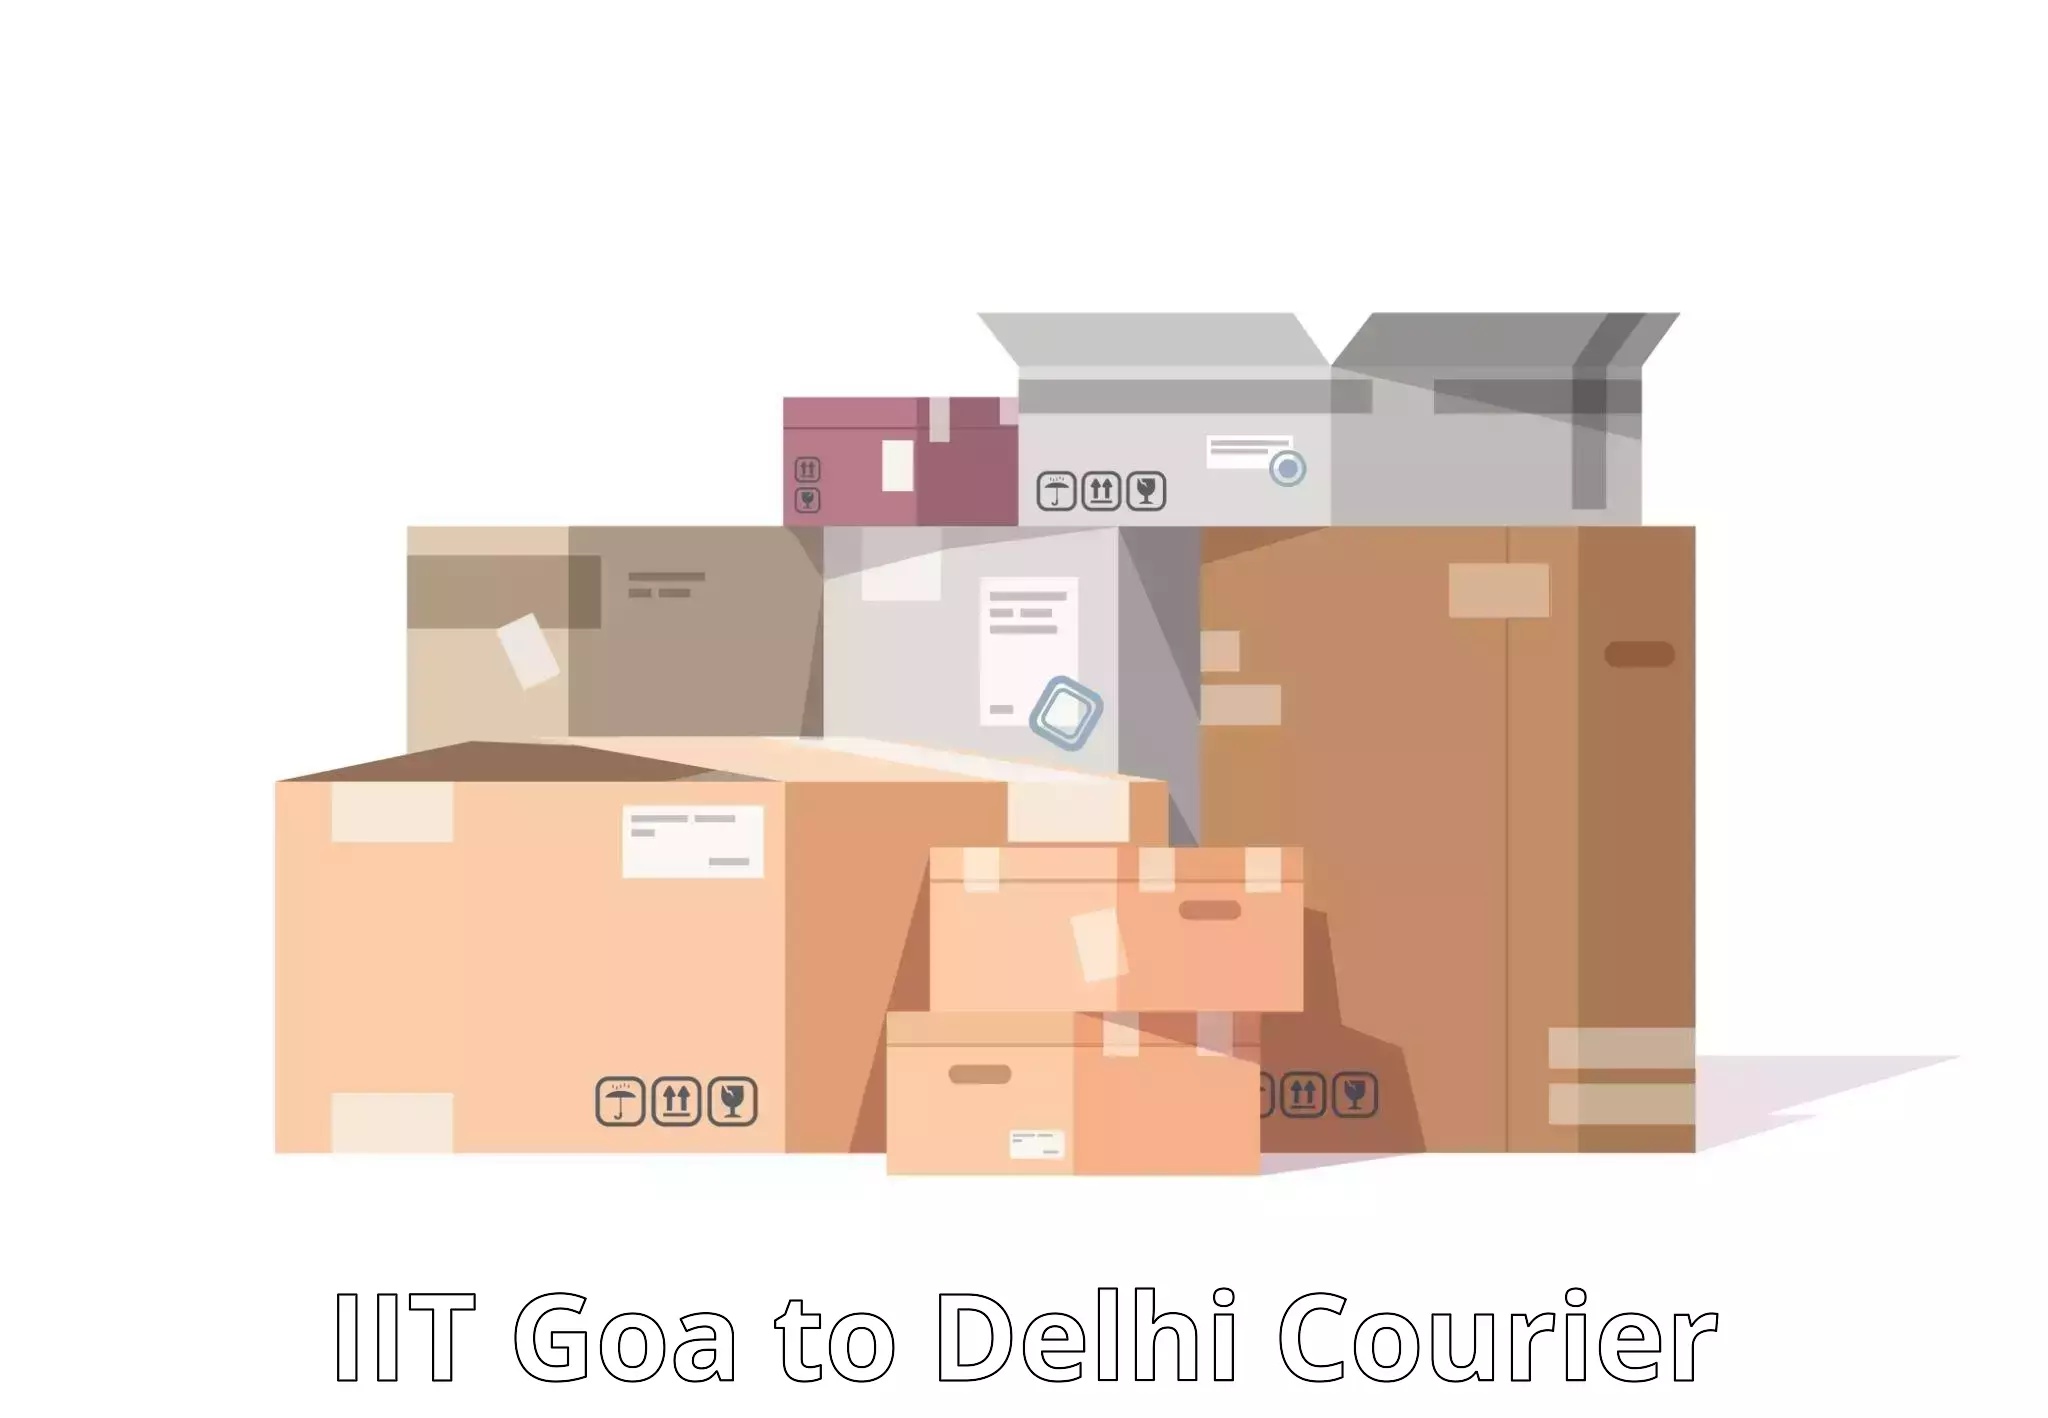 Ocean freight courier IIT Goa to IIT Delhi